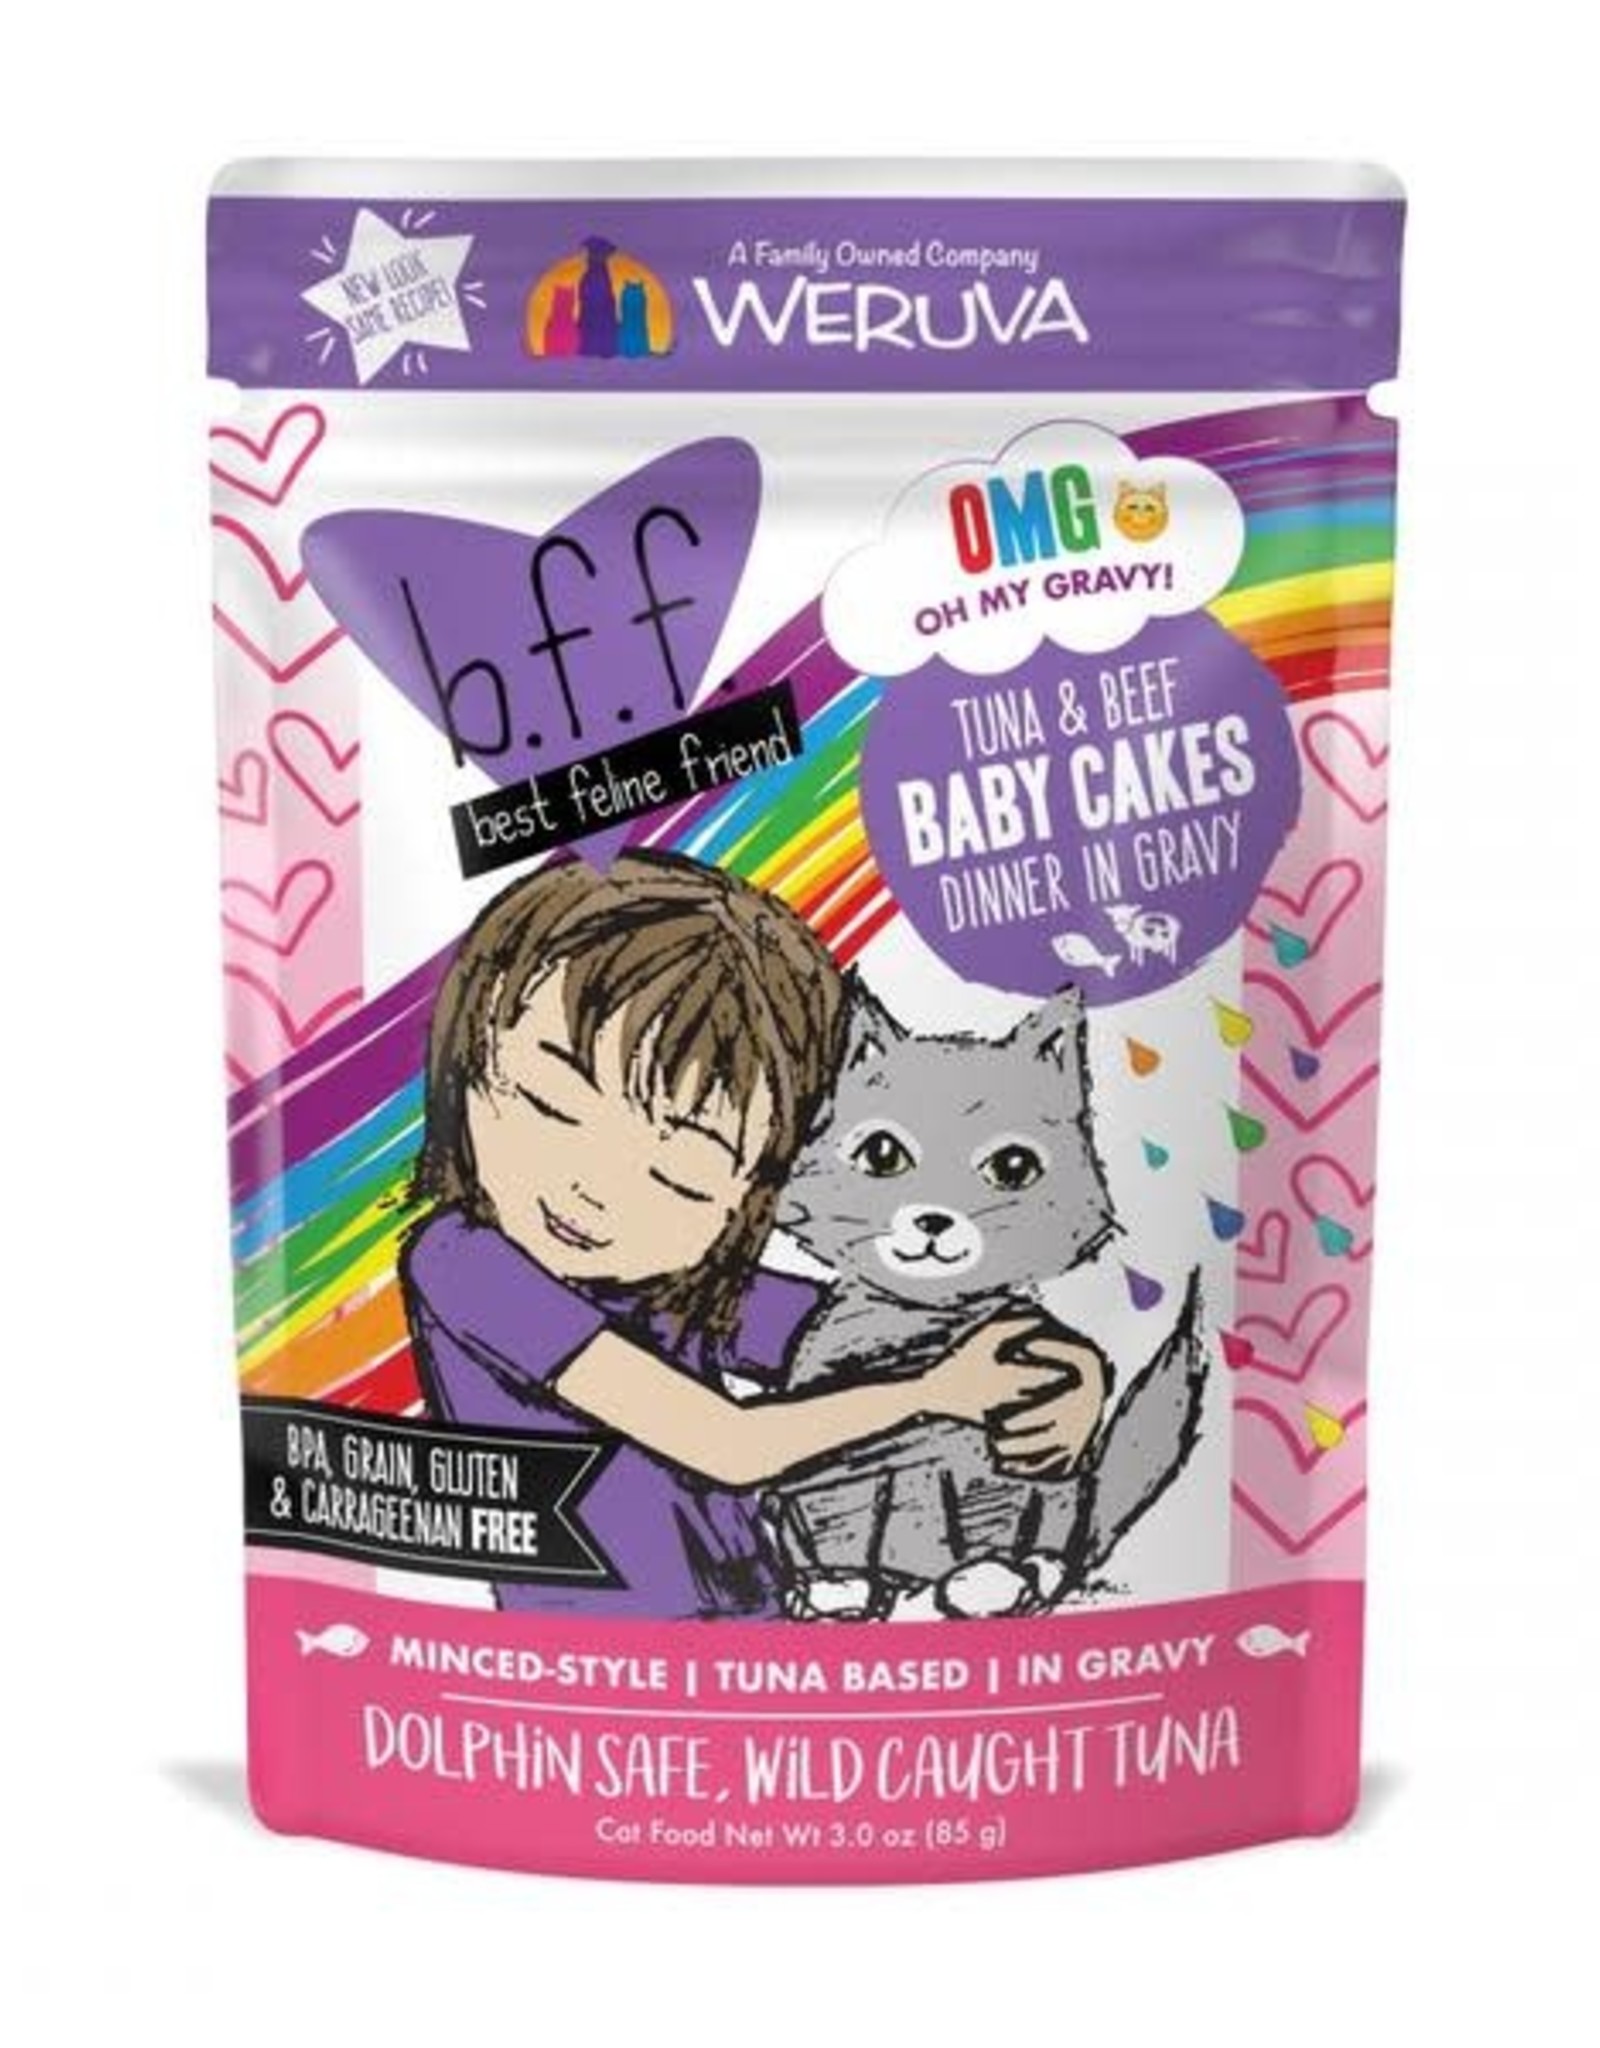 Weruva Weruva BFF Tuna & Beef Baby Cakes cat food Pouch- 3 oz.